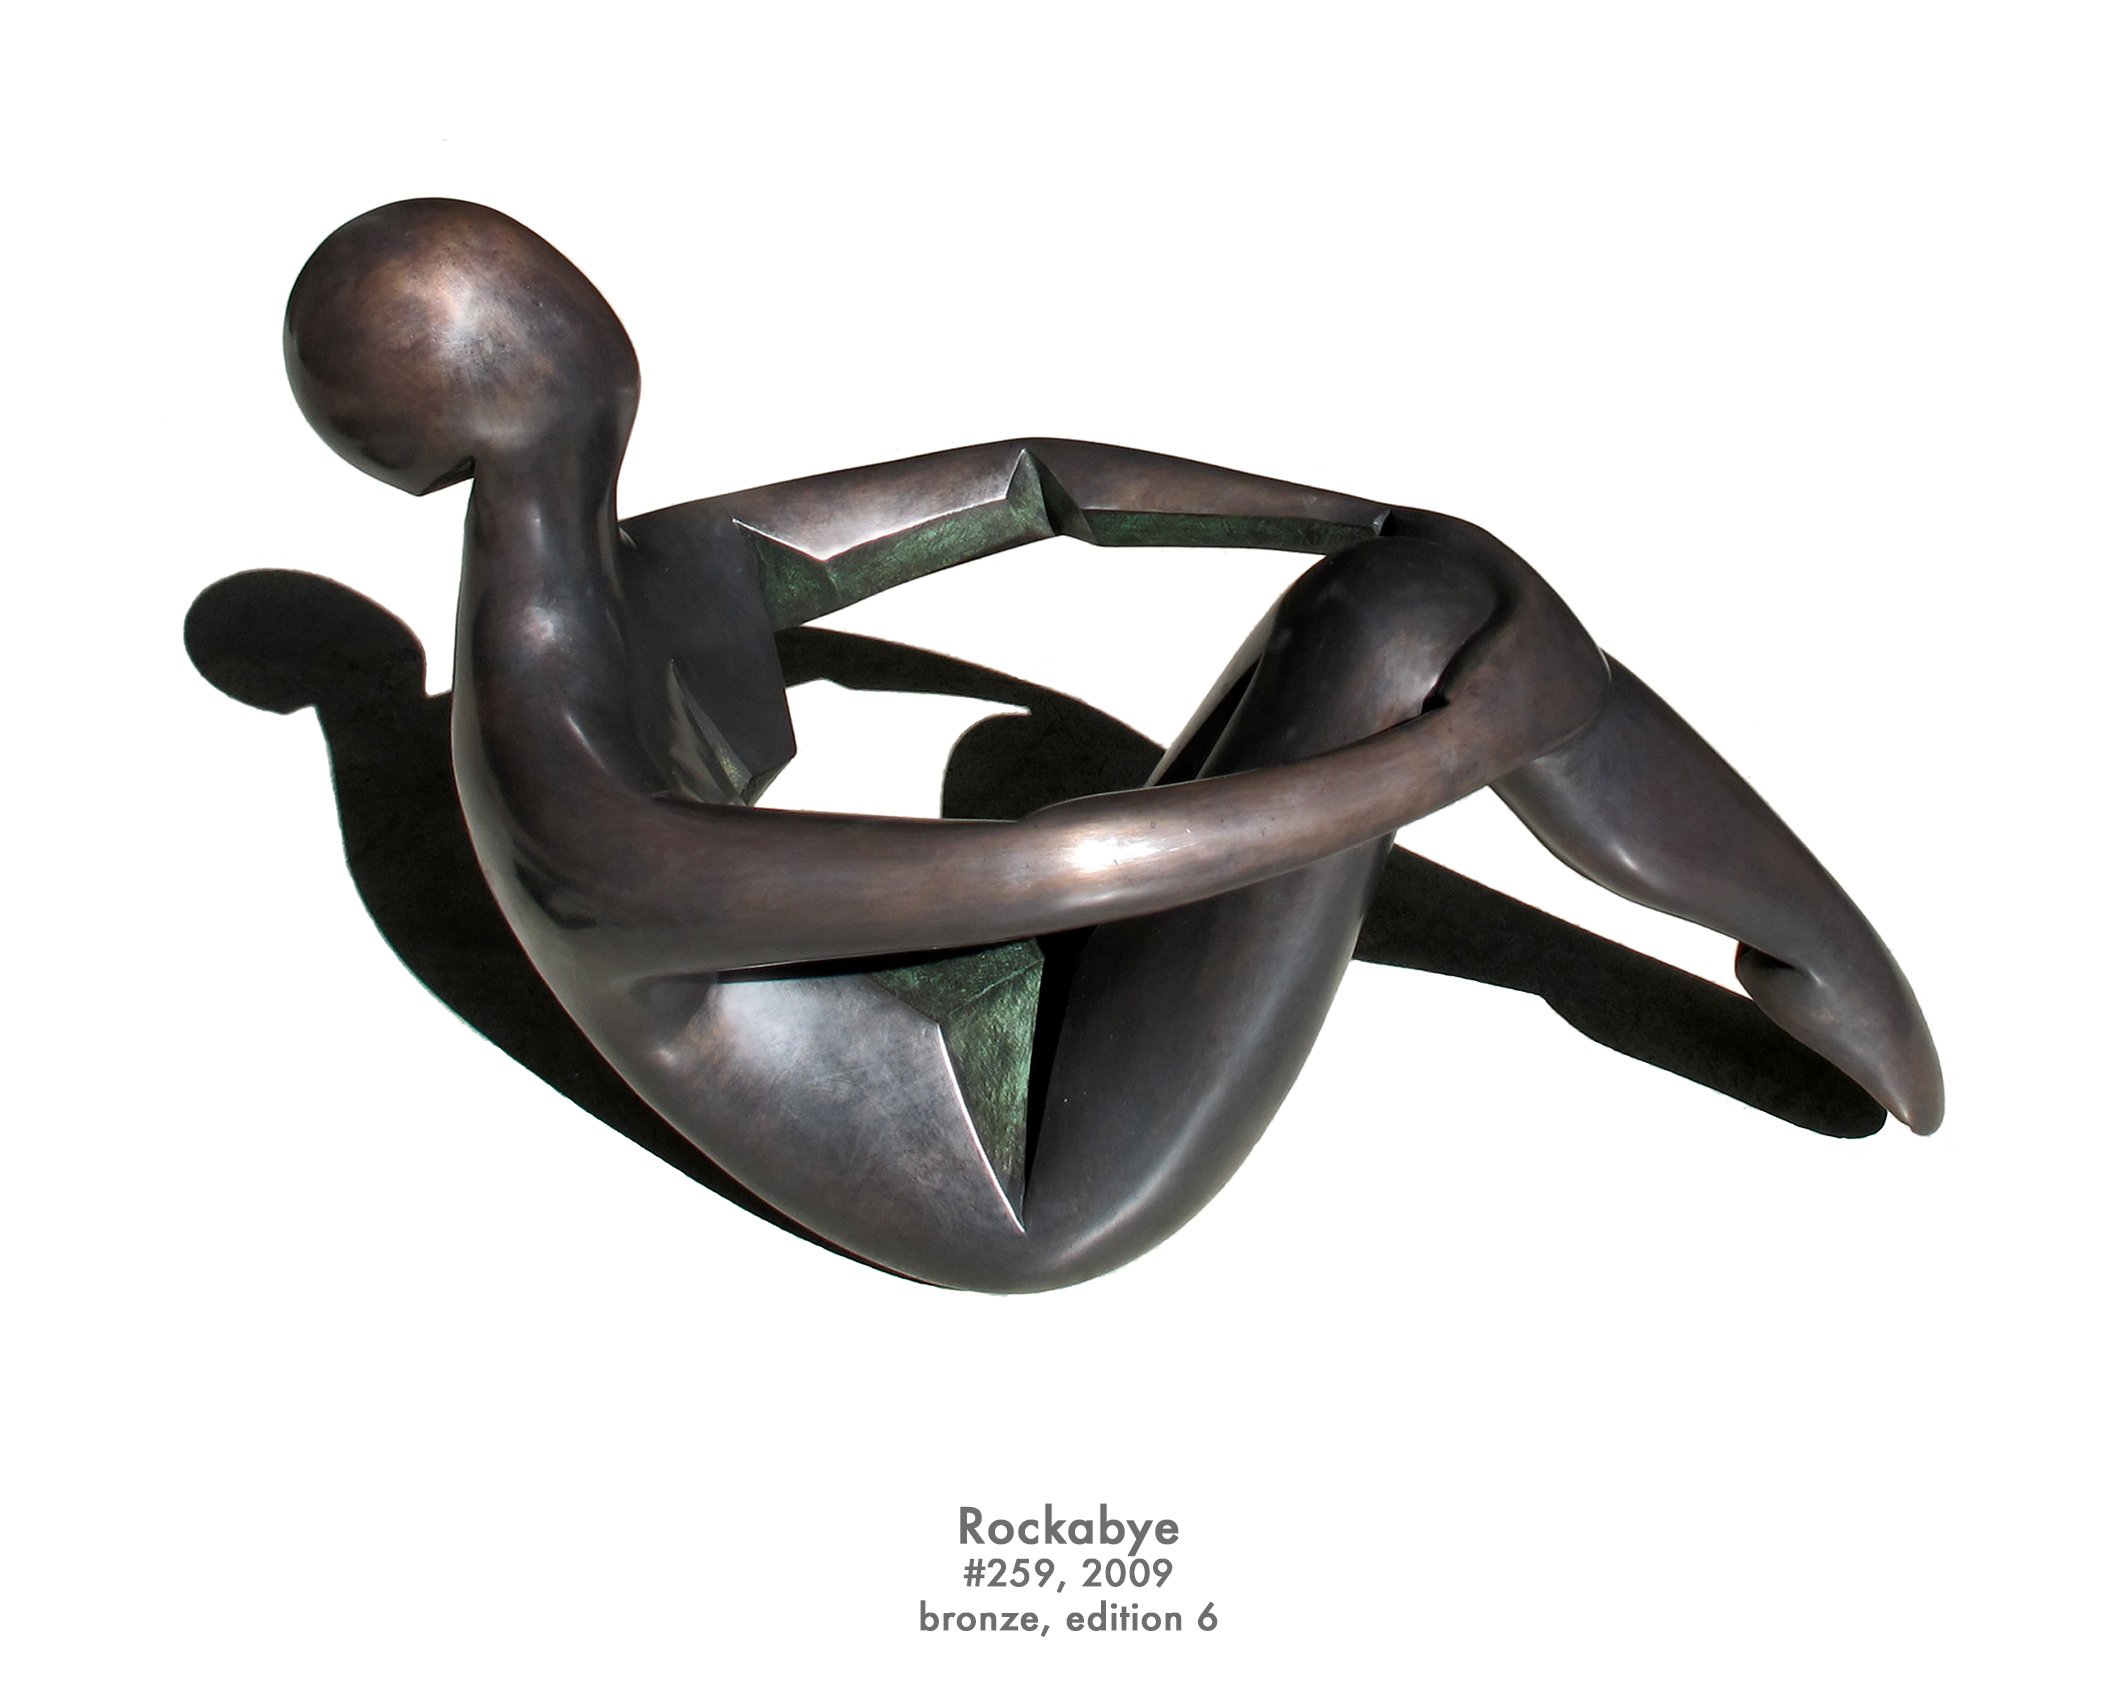 Rockabye, 2009, bronze, #259